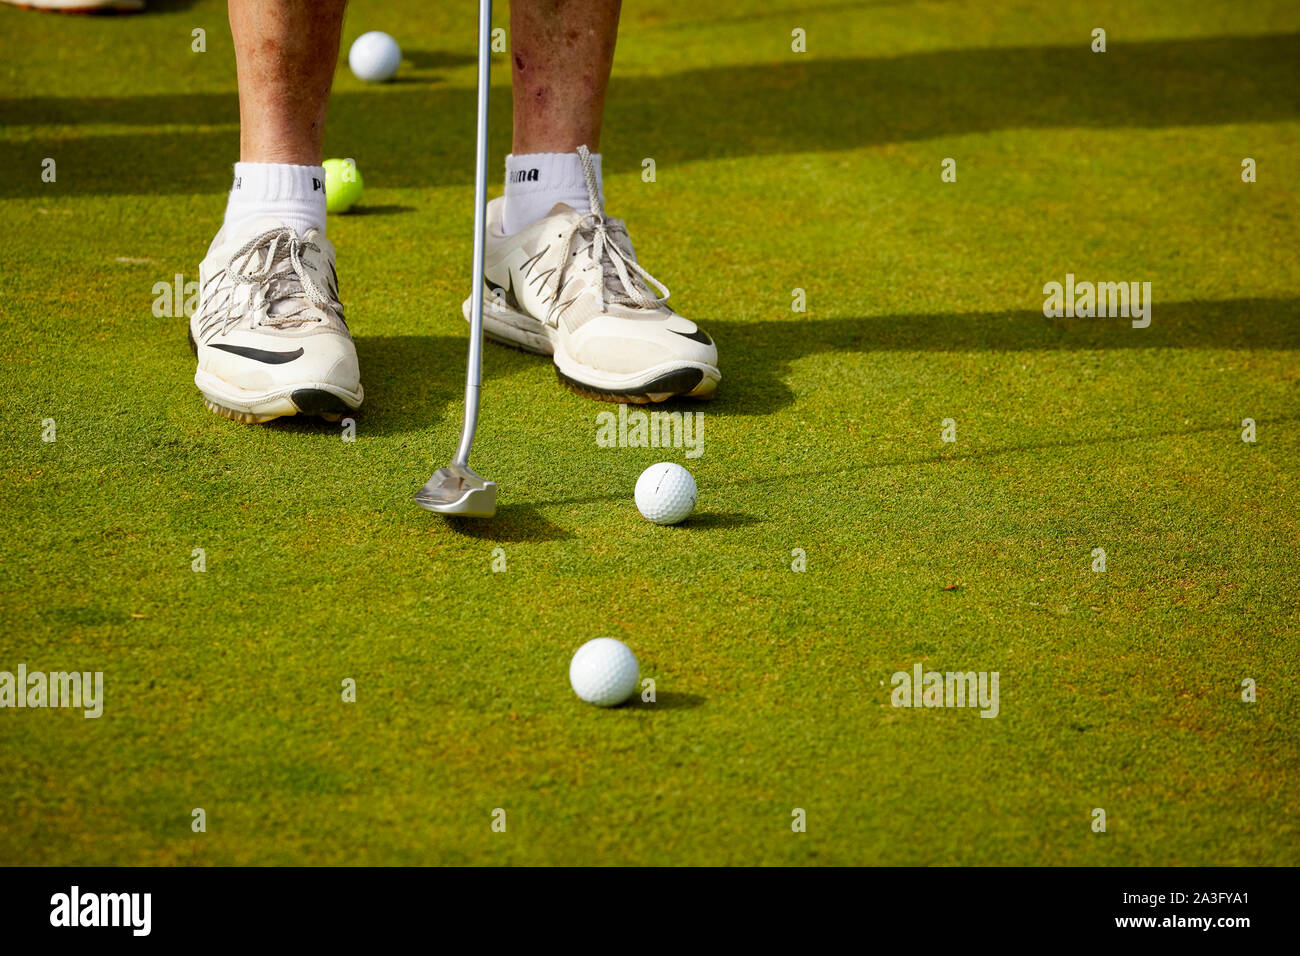 Golf jouer au golf sur le putting practice green Banque D'Images